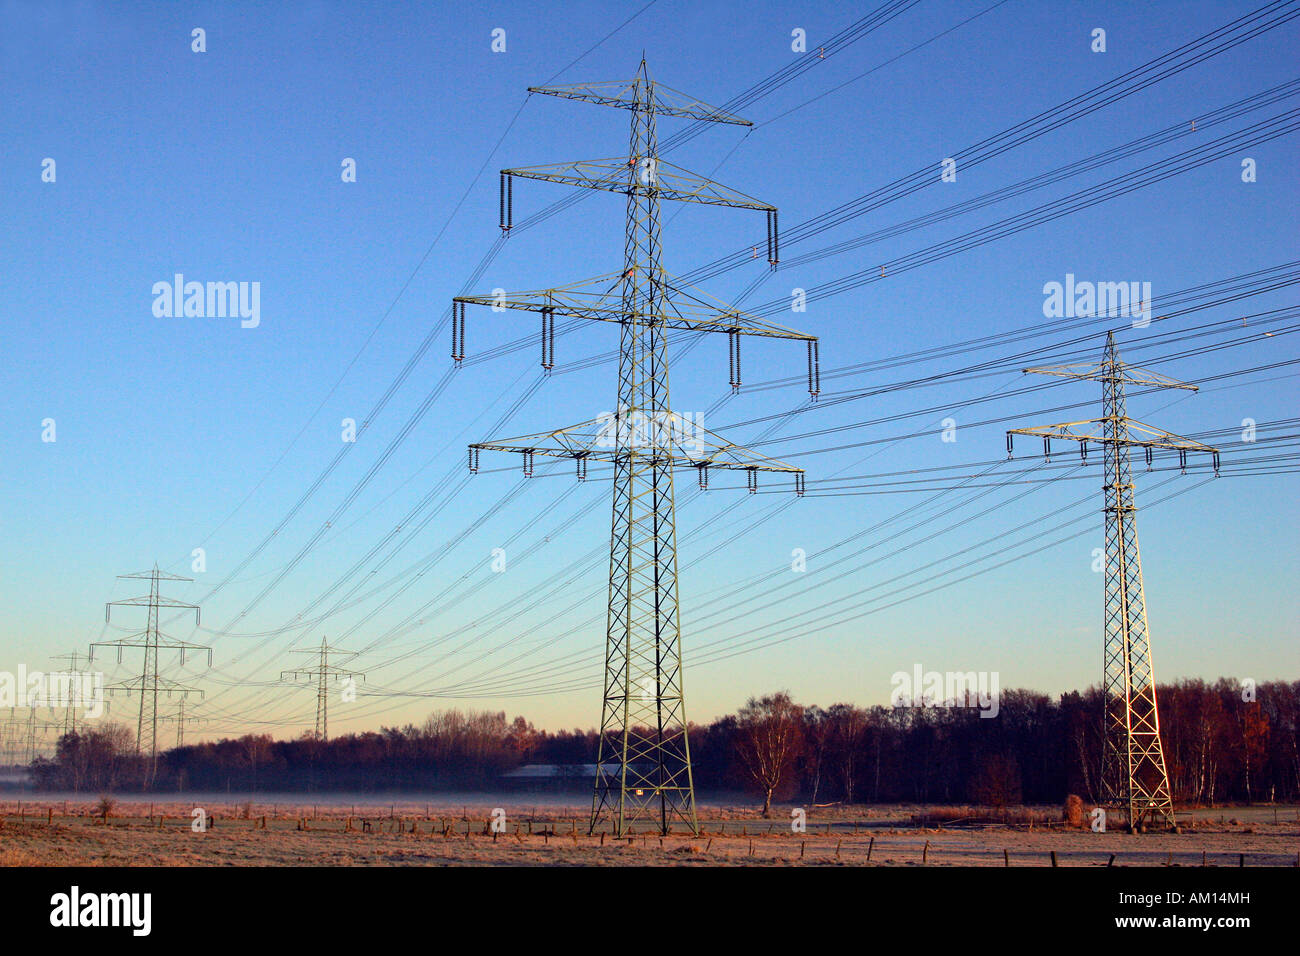 Strommasten - Linien Hochspannung Strom - Sonnenaufgang am Wintermorgen - Schleswig-Holstein, Deutschland, Europa Stockfoto